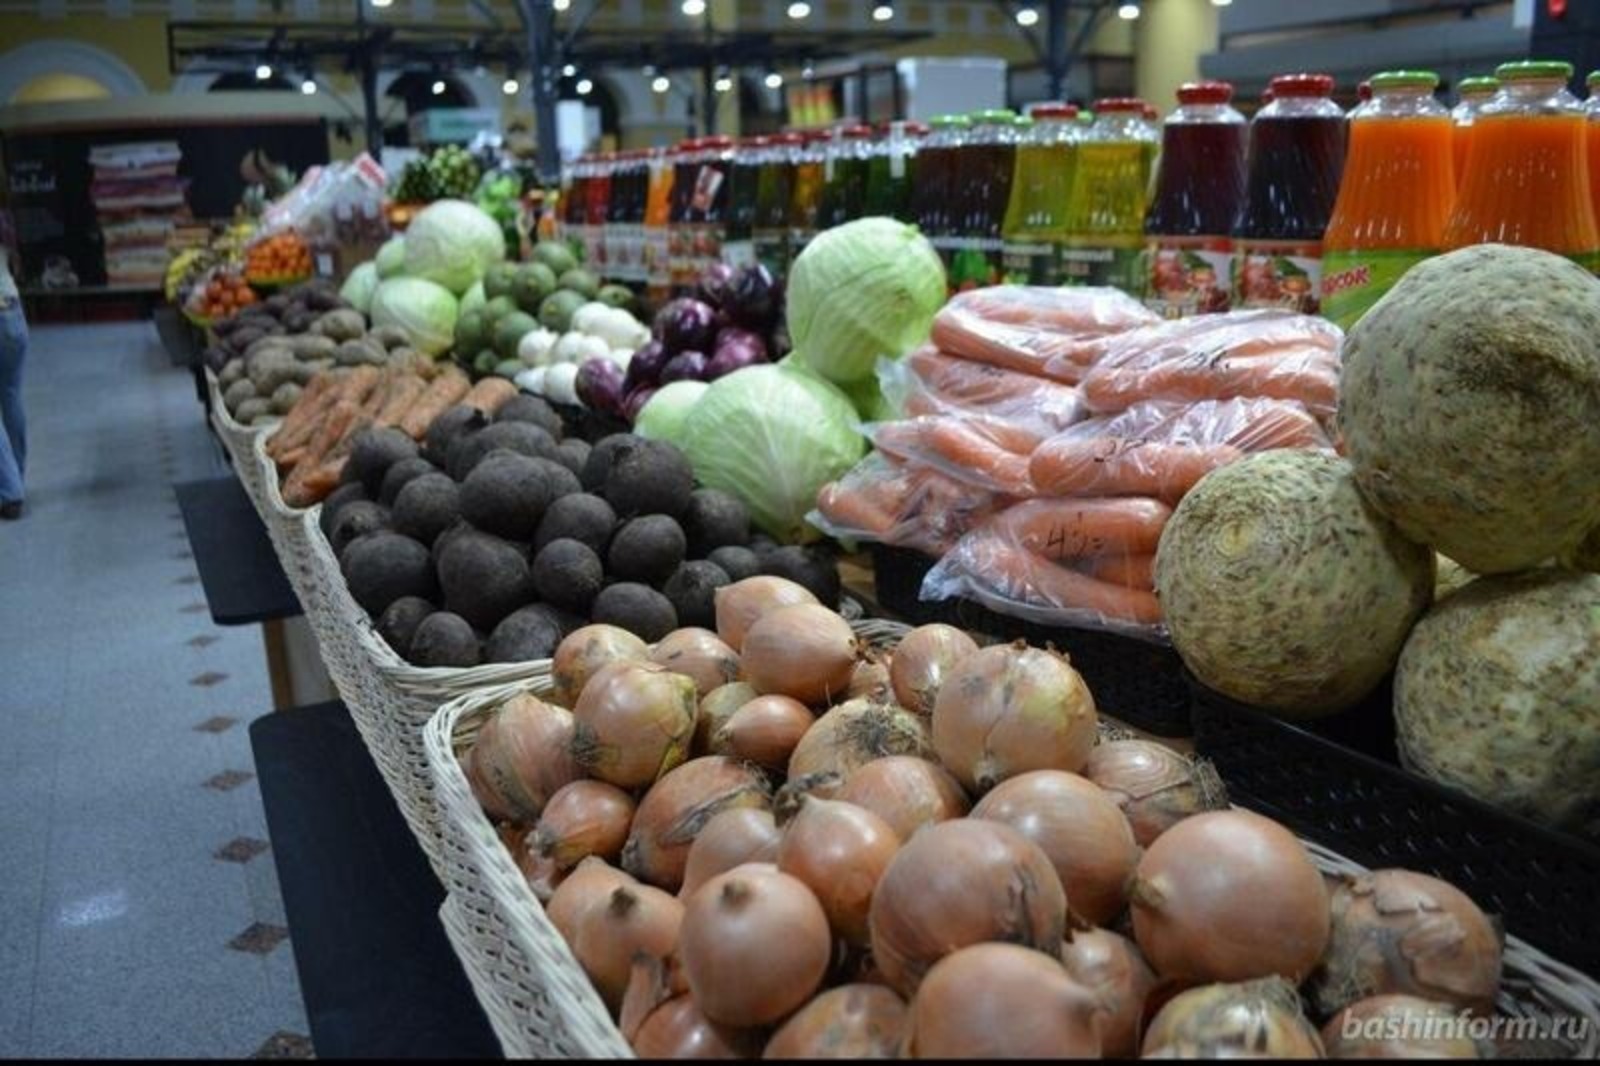 В Башкирии цены в продуктовых магазинах стабилизировались